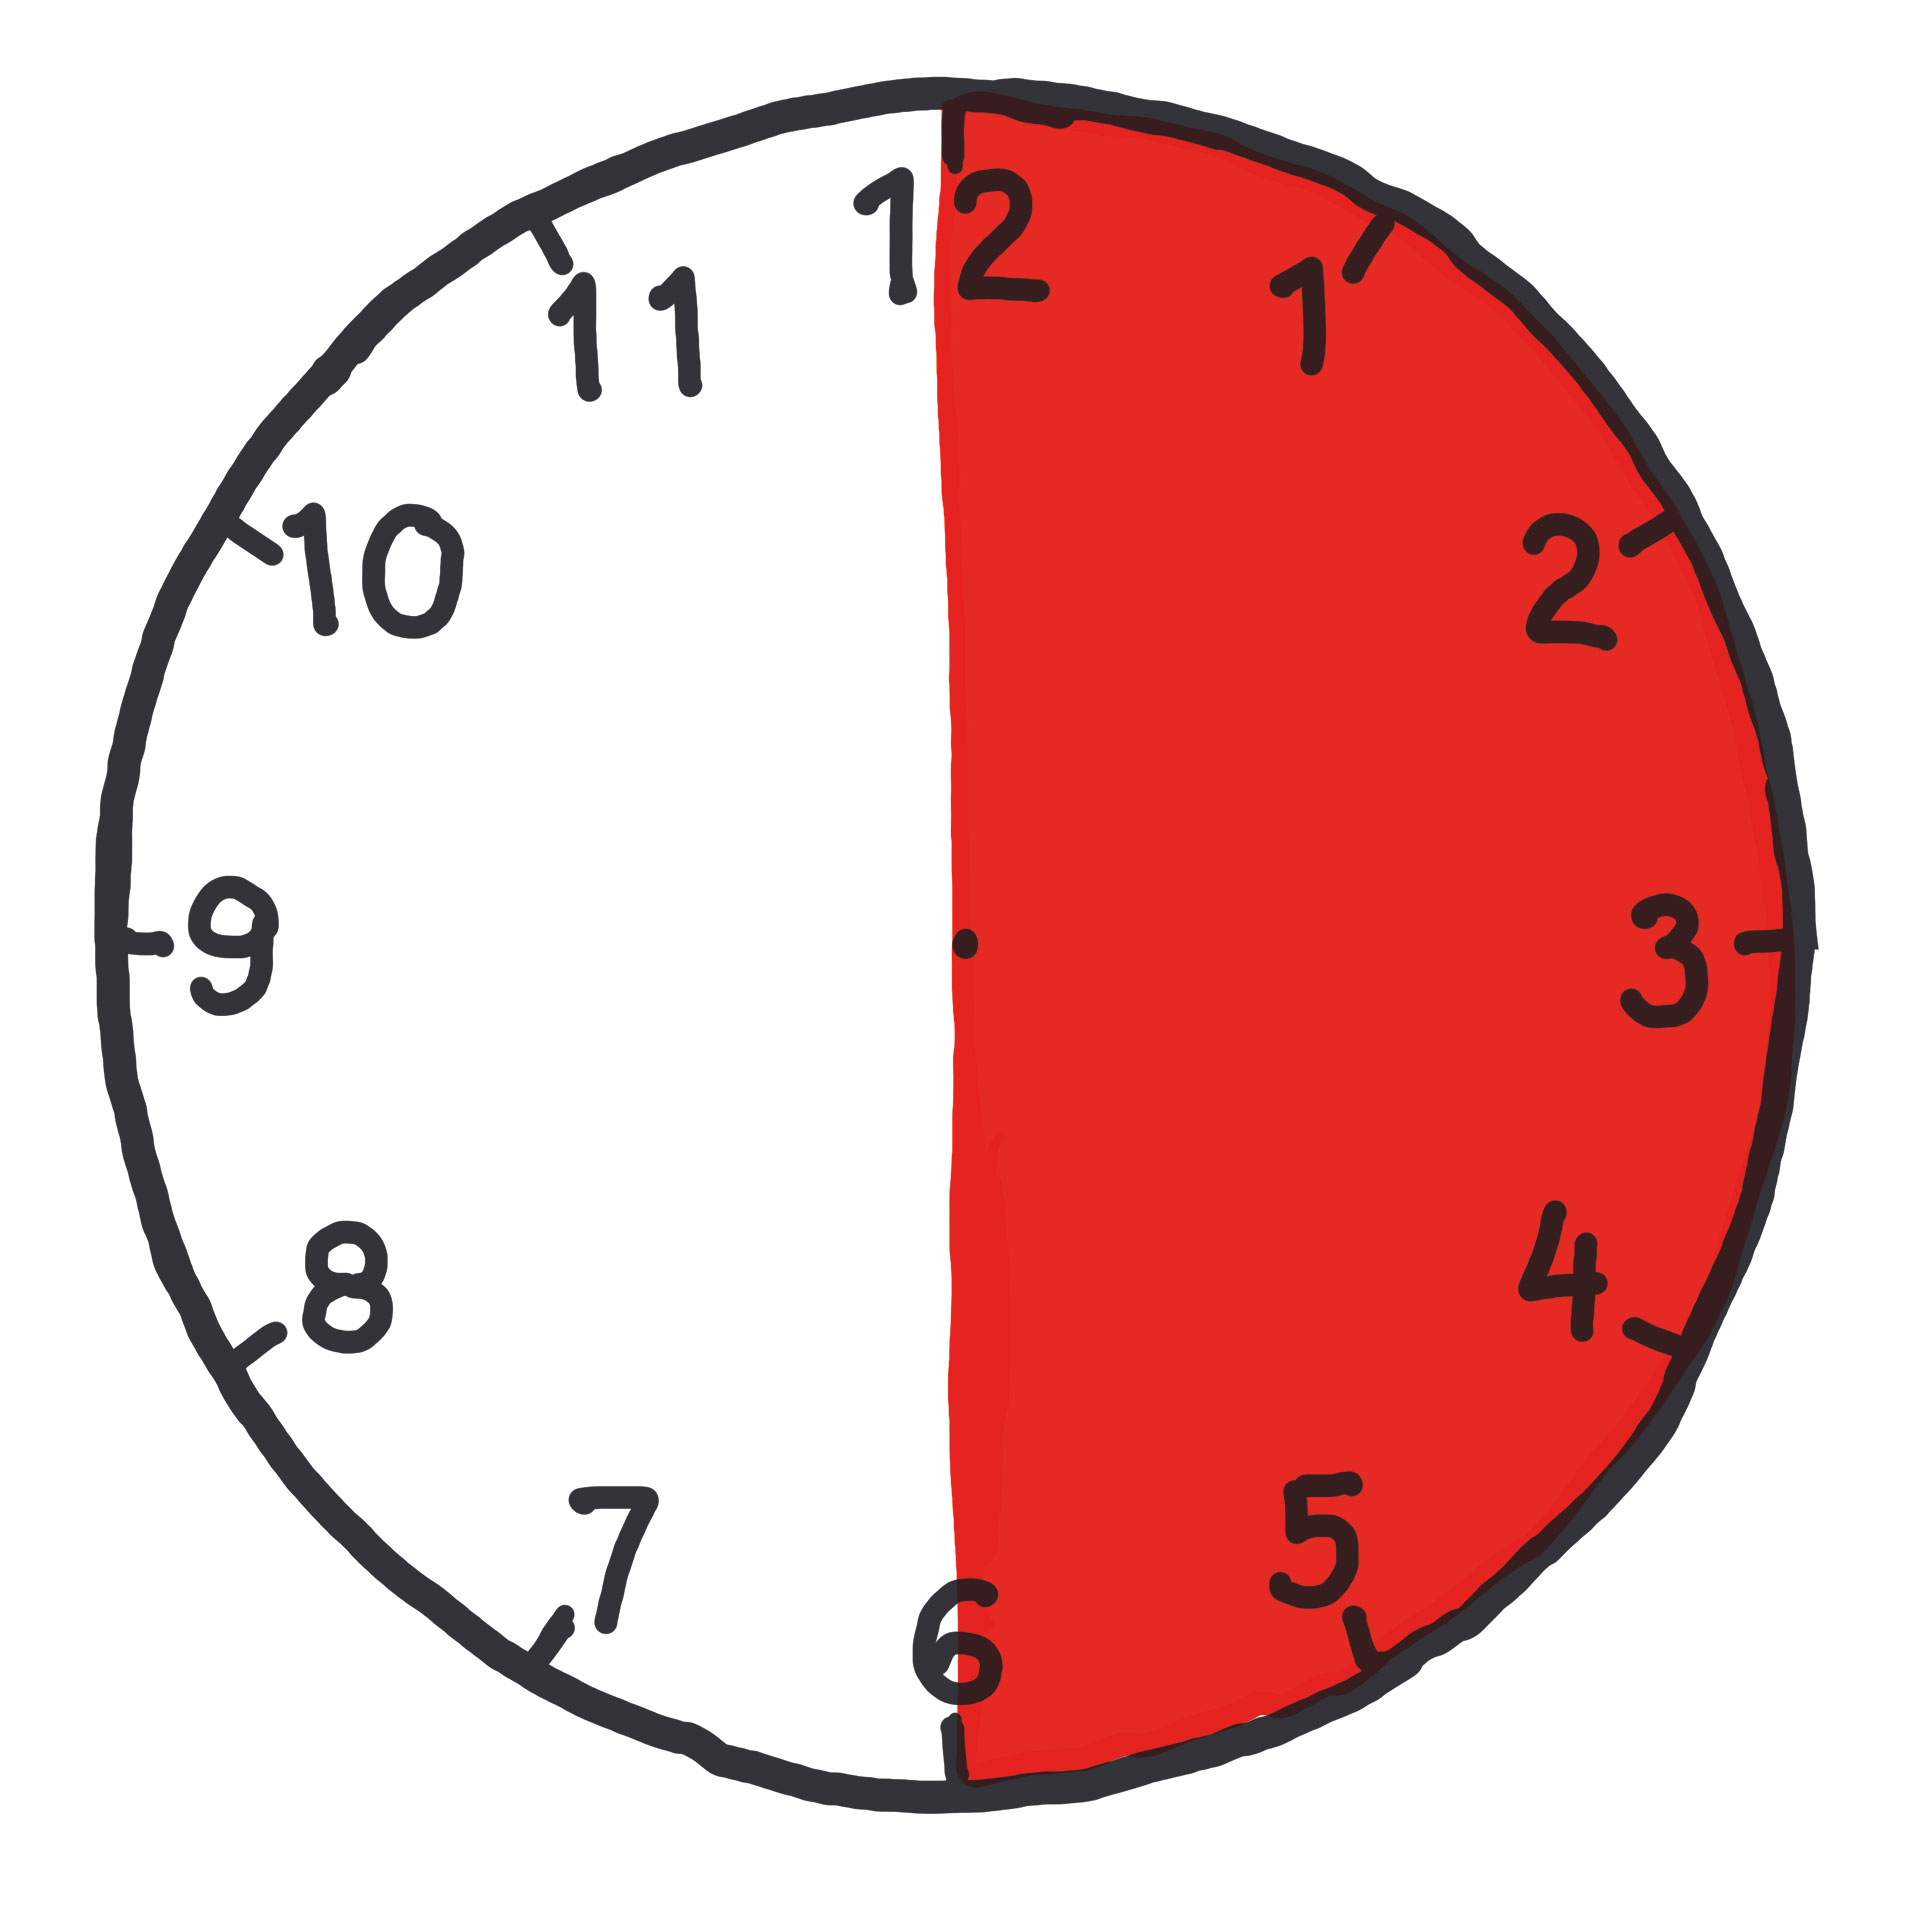 Ein Kreis mit einer Einteilung in 60 Minuten. Die erste halbe Stunde ist rot hinterlegt, die zweite halbe Stunde ist weiß hinterlegt.